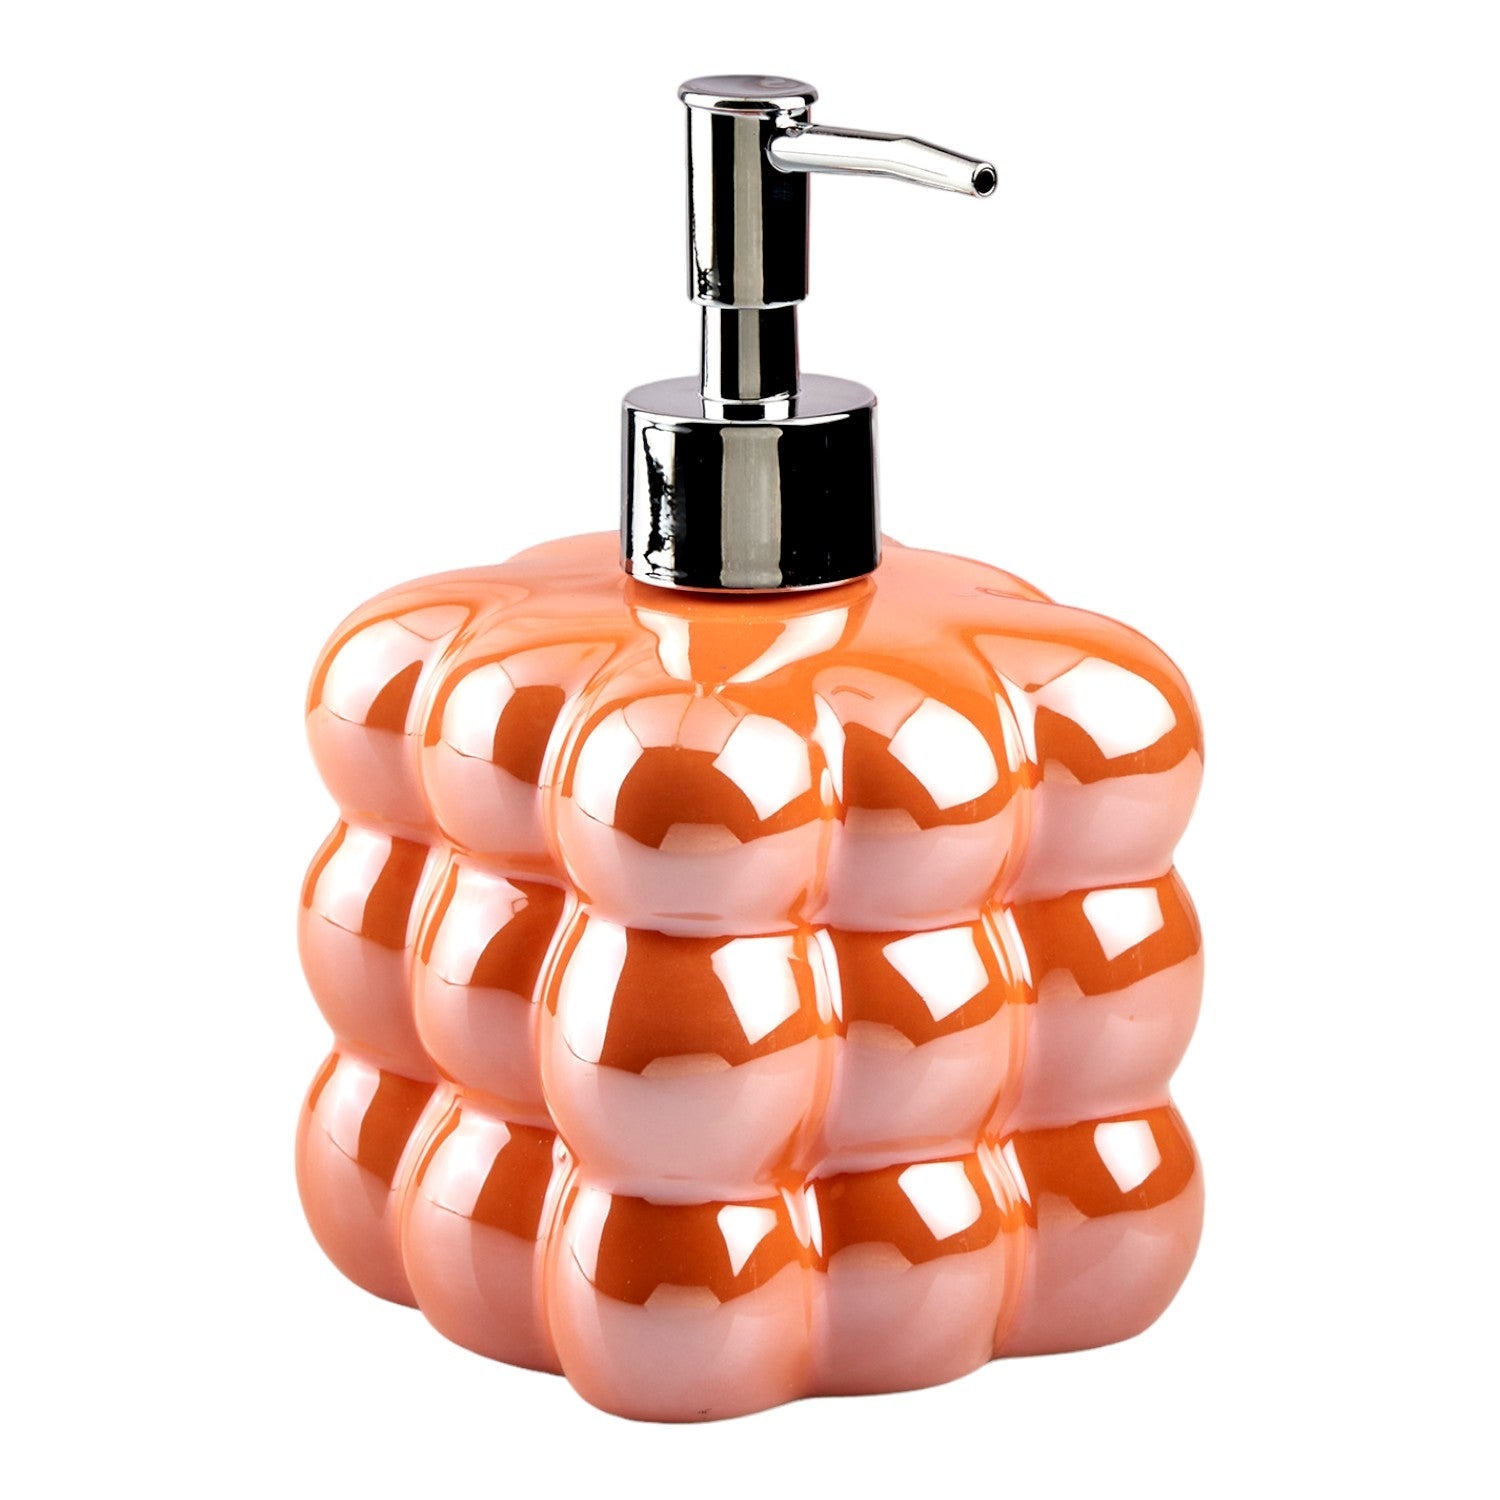 Ceramic Soap Dispenser liquid handwash pump for Bathroom, Set of 1, Orange (10611)